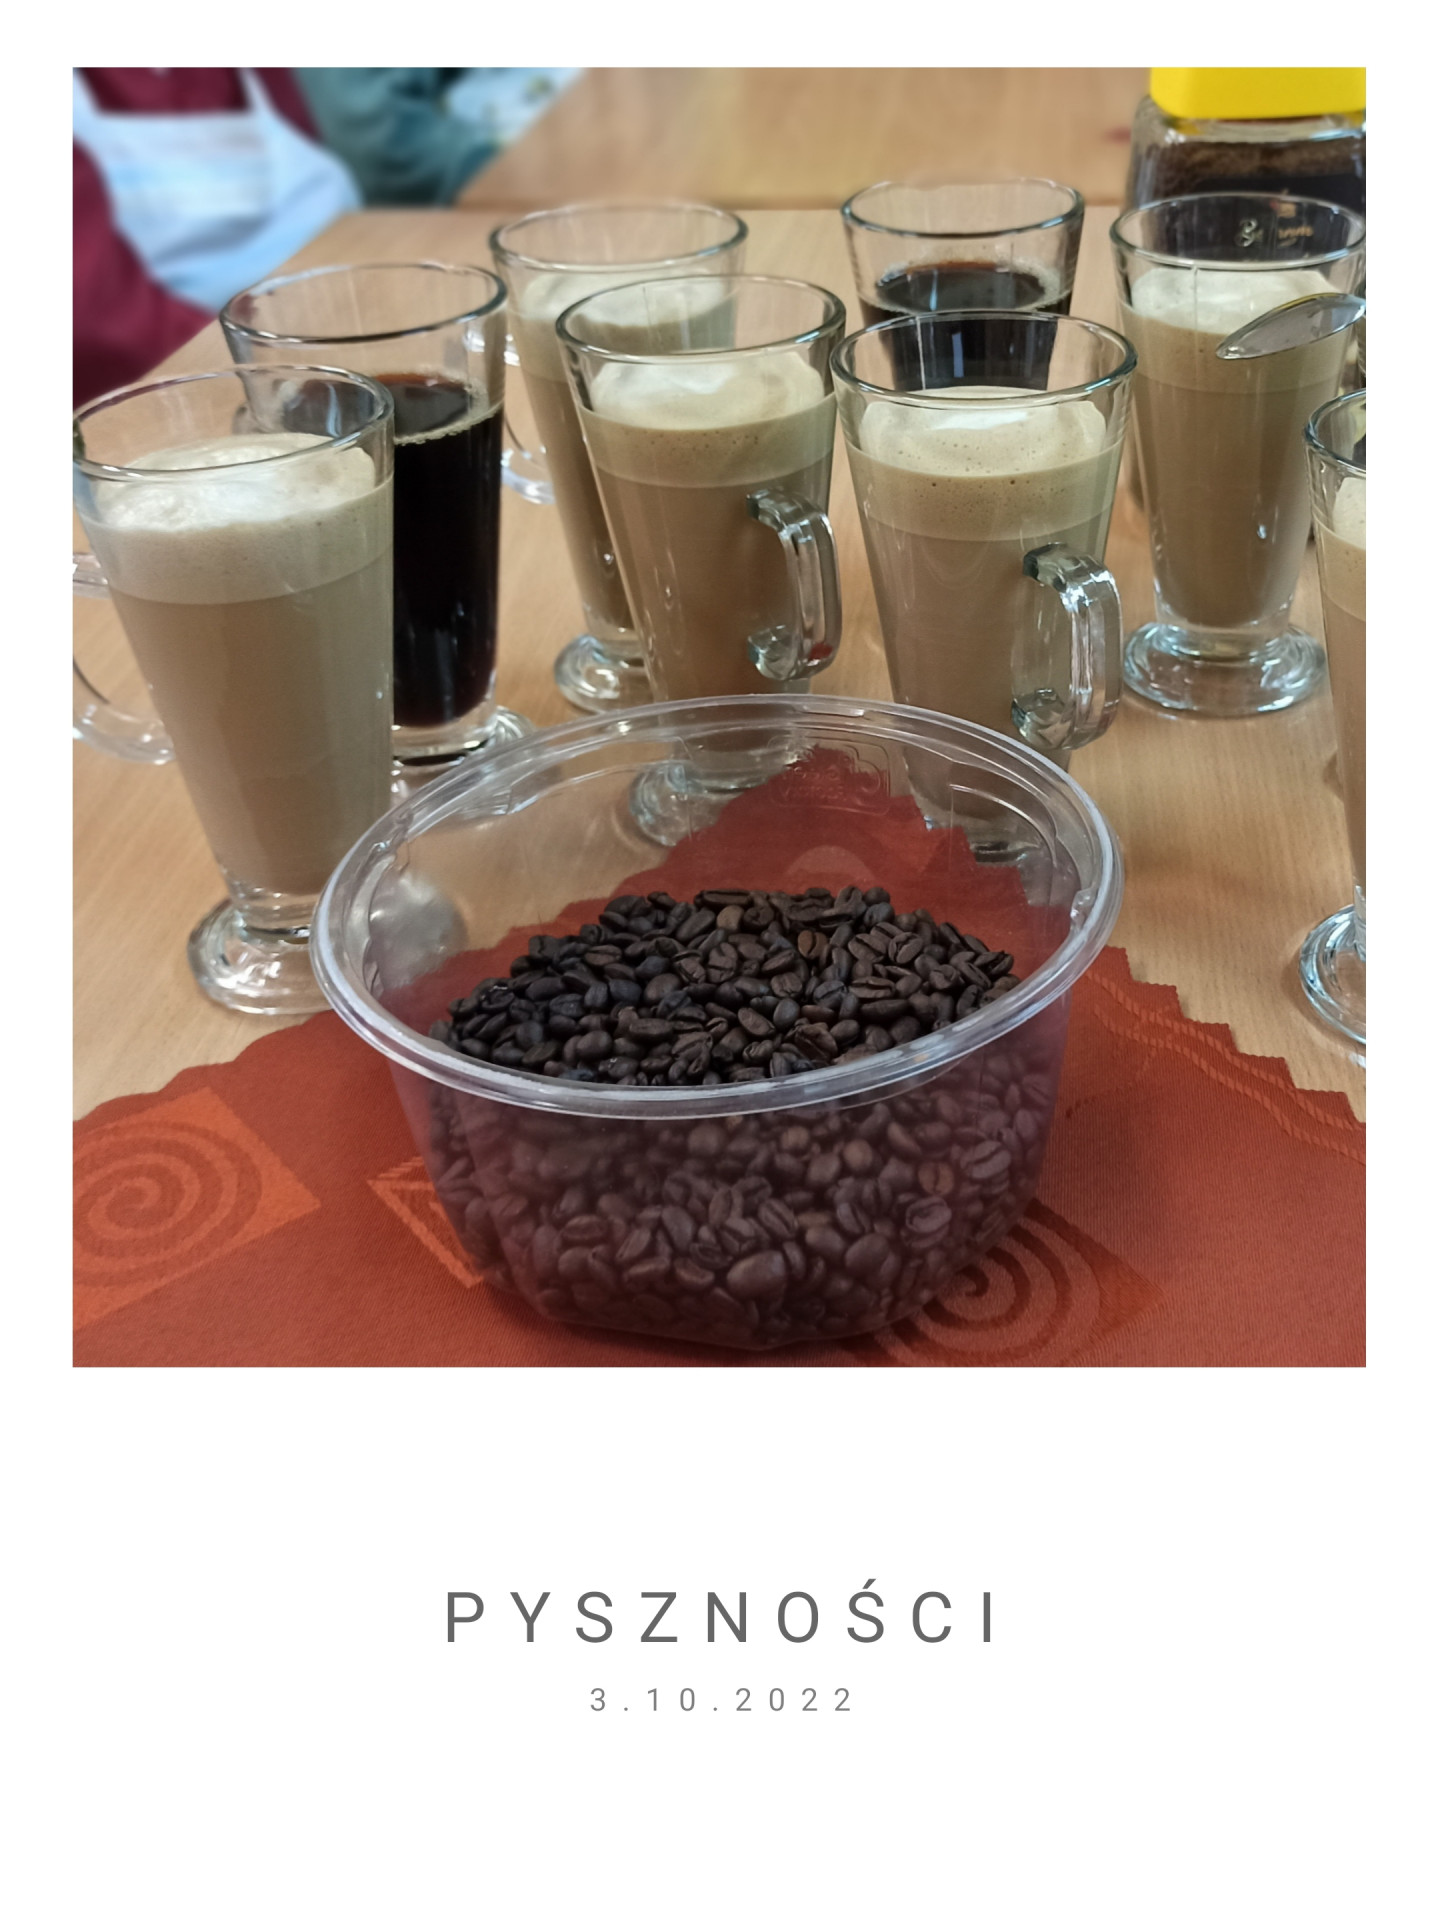 Obrazek ze zdjęciem przedstawiającym gotowe desery kawowe, kawy bez mleka oraz pojemnik z ziarenkami kawy na brązowej materiałowej serwetce. Na dole napis: „PYSZNOŚCI 3.10.2022”.